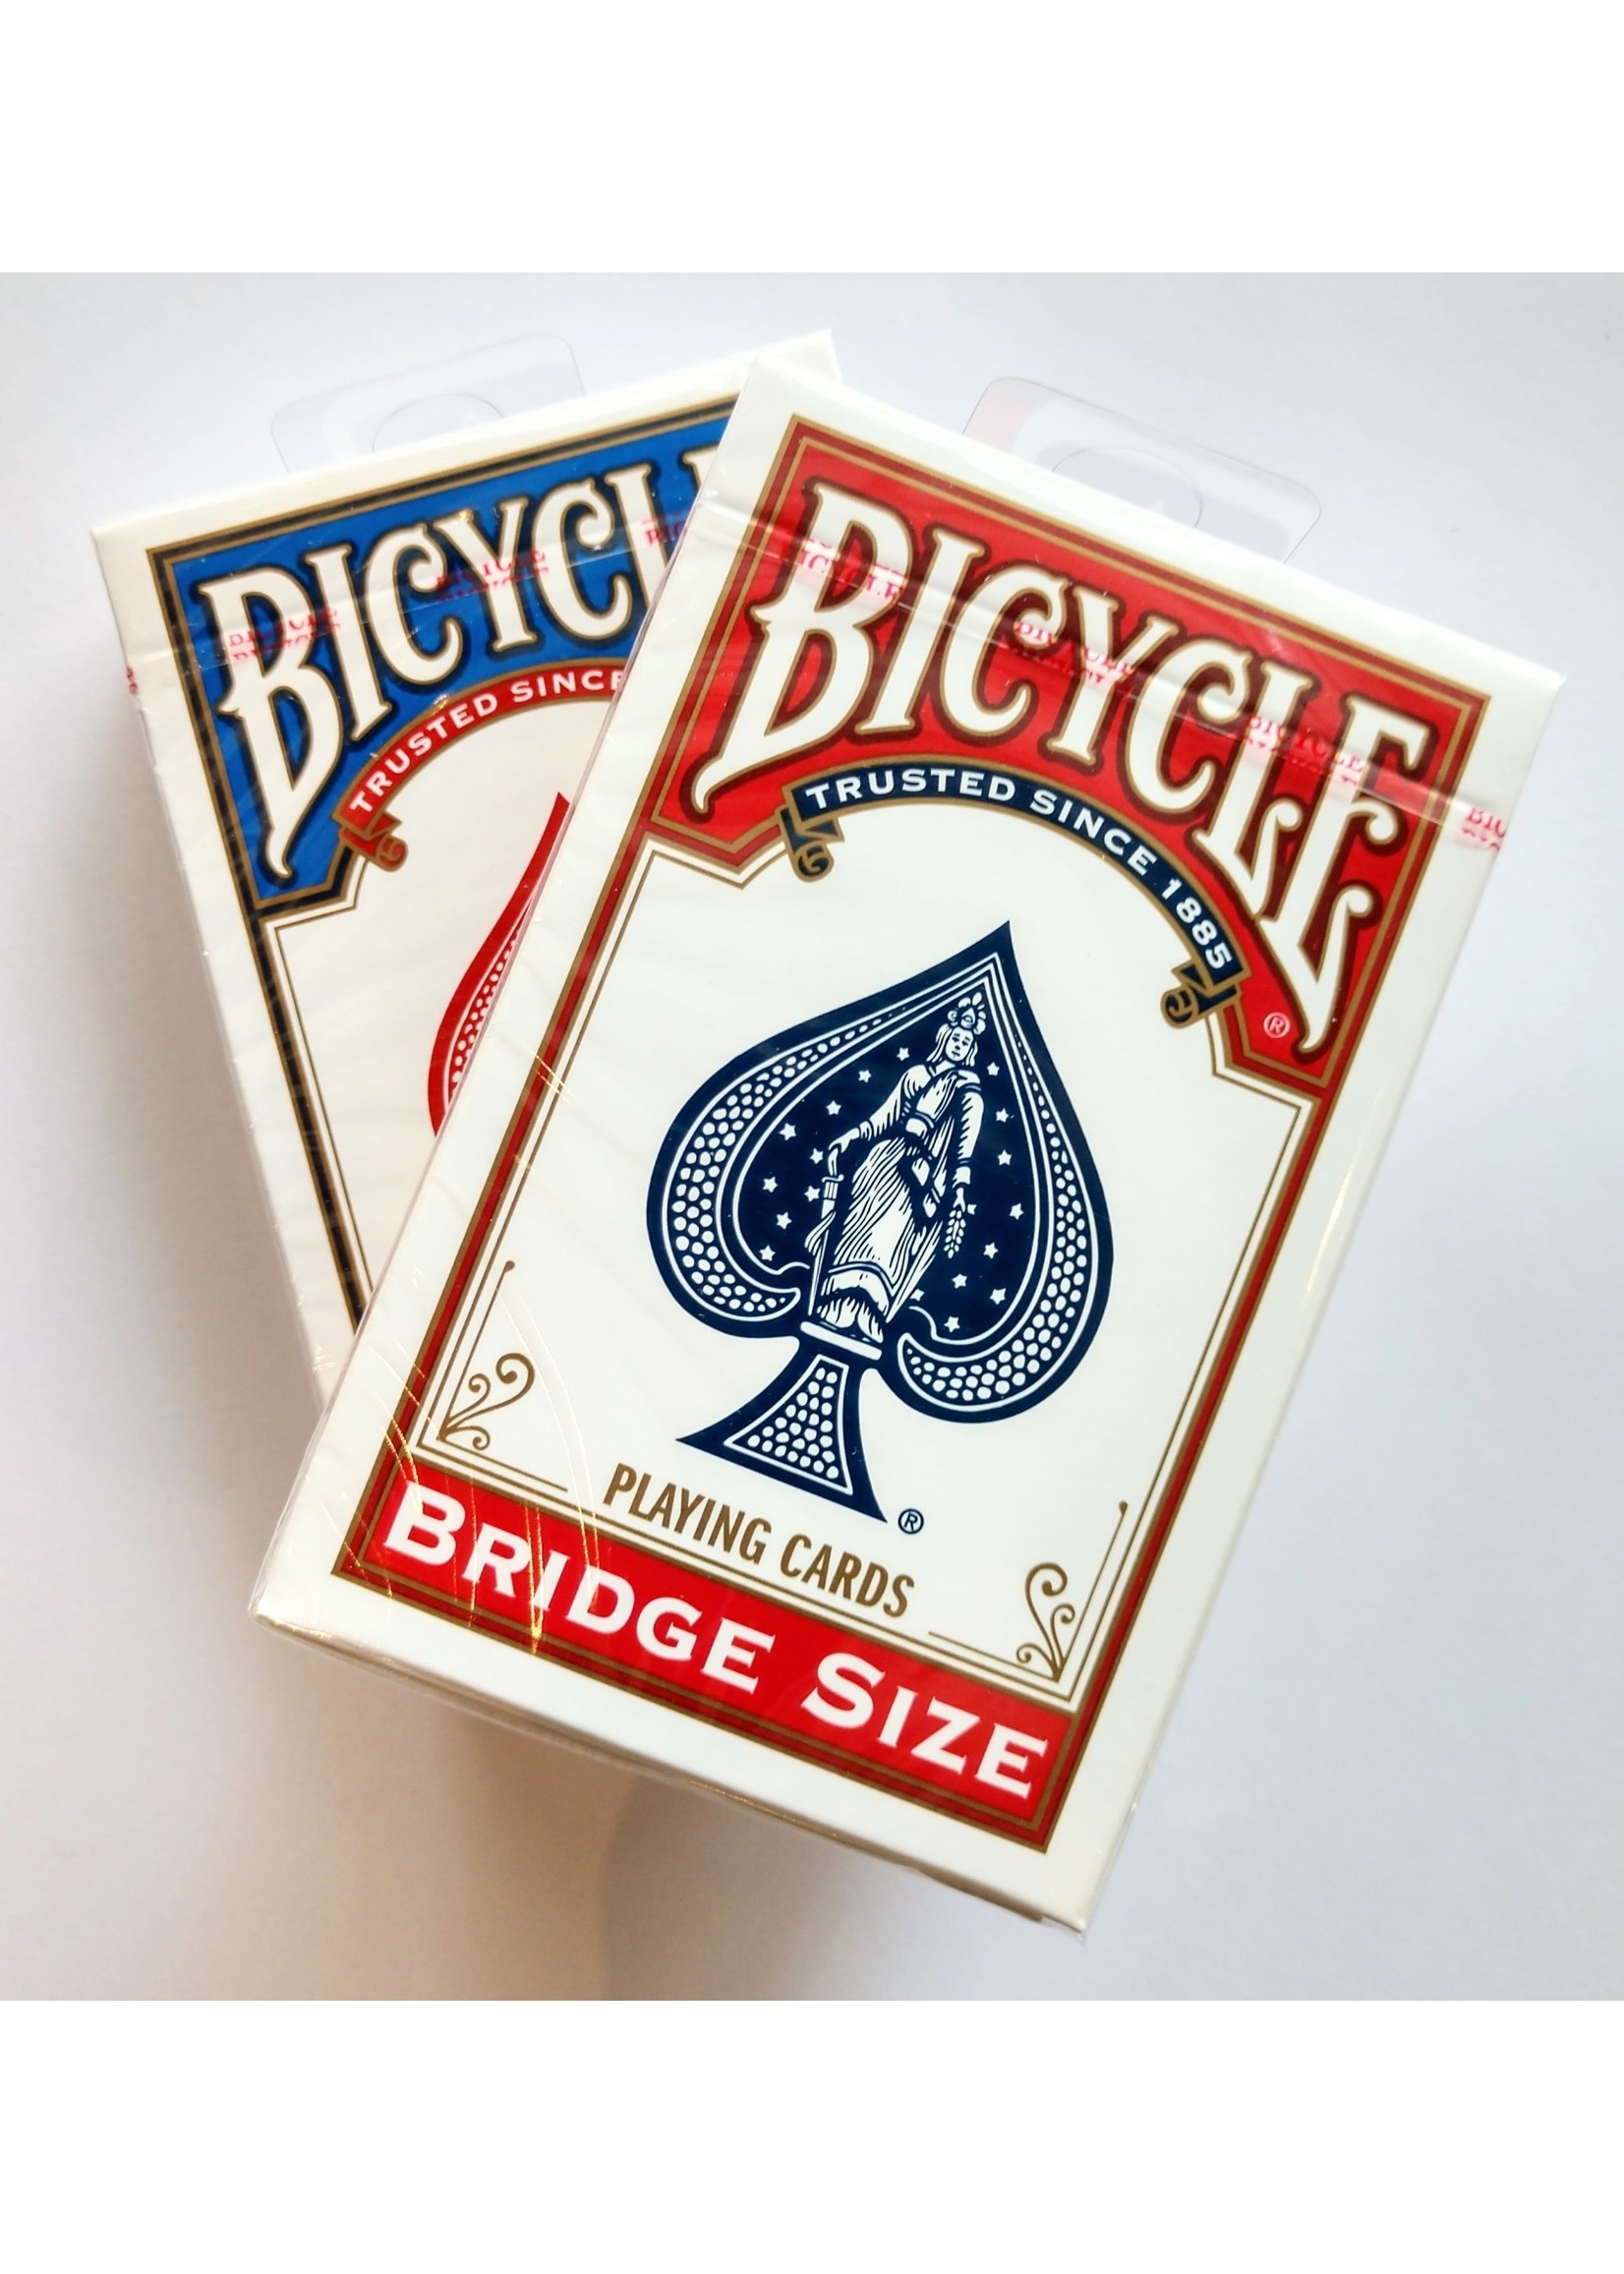 Bicycle Large Print Bridge Playing Cards